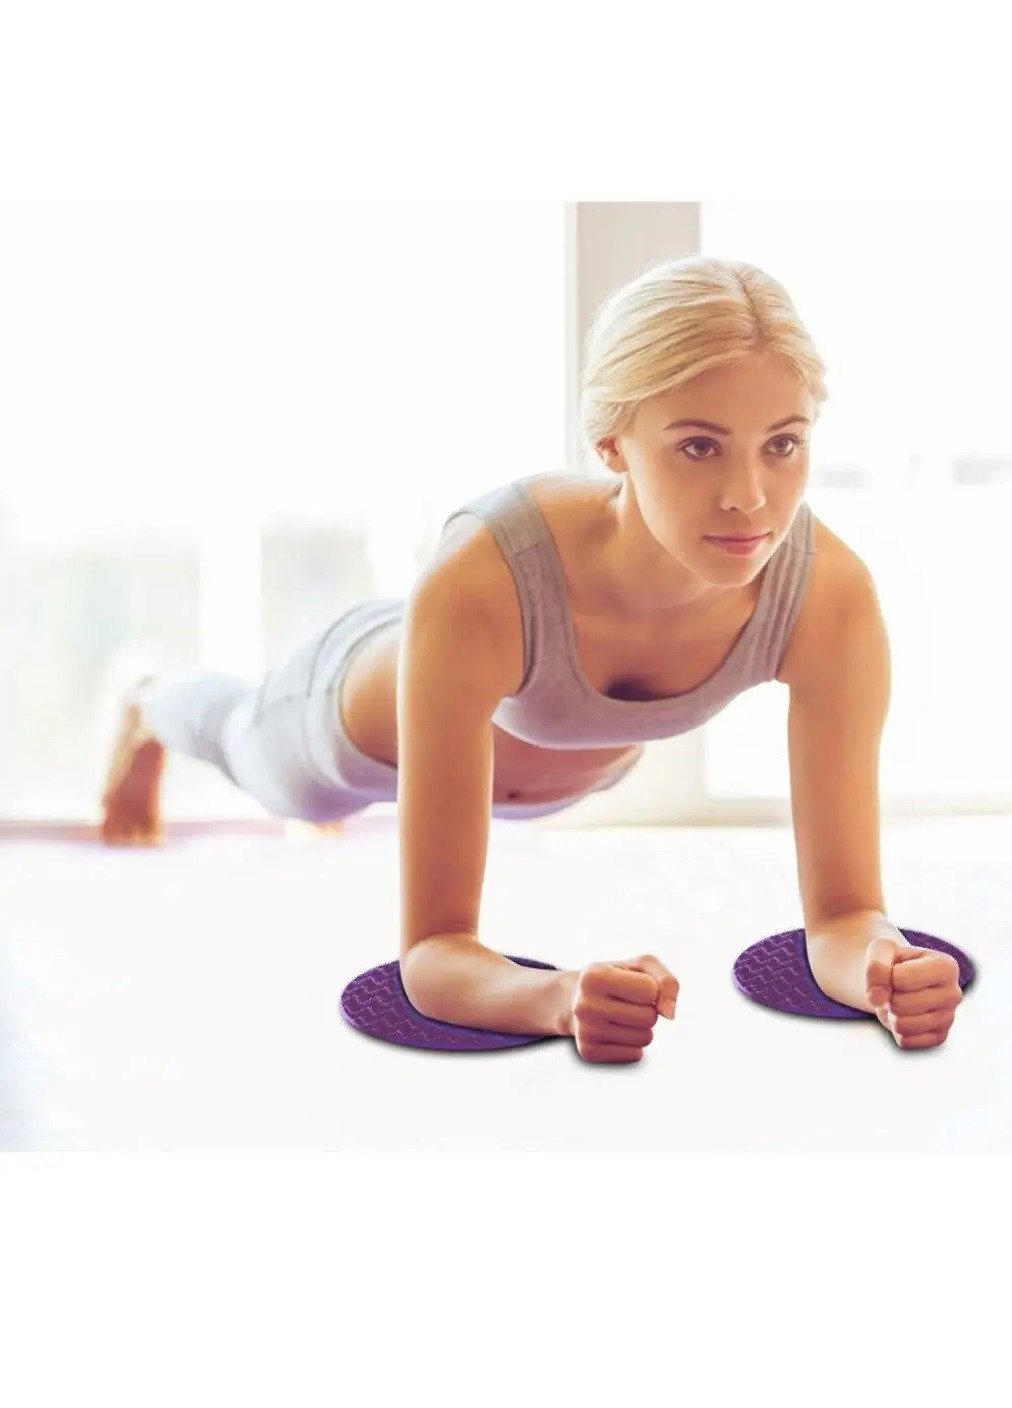 Набор ковриков под локти и колени для фитнеса йоги пилатеса нескользящие 2 шт 17,5х17,5х1,5 см (473879-Prob) Фиолетовые Unbranded (256704805)